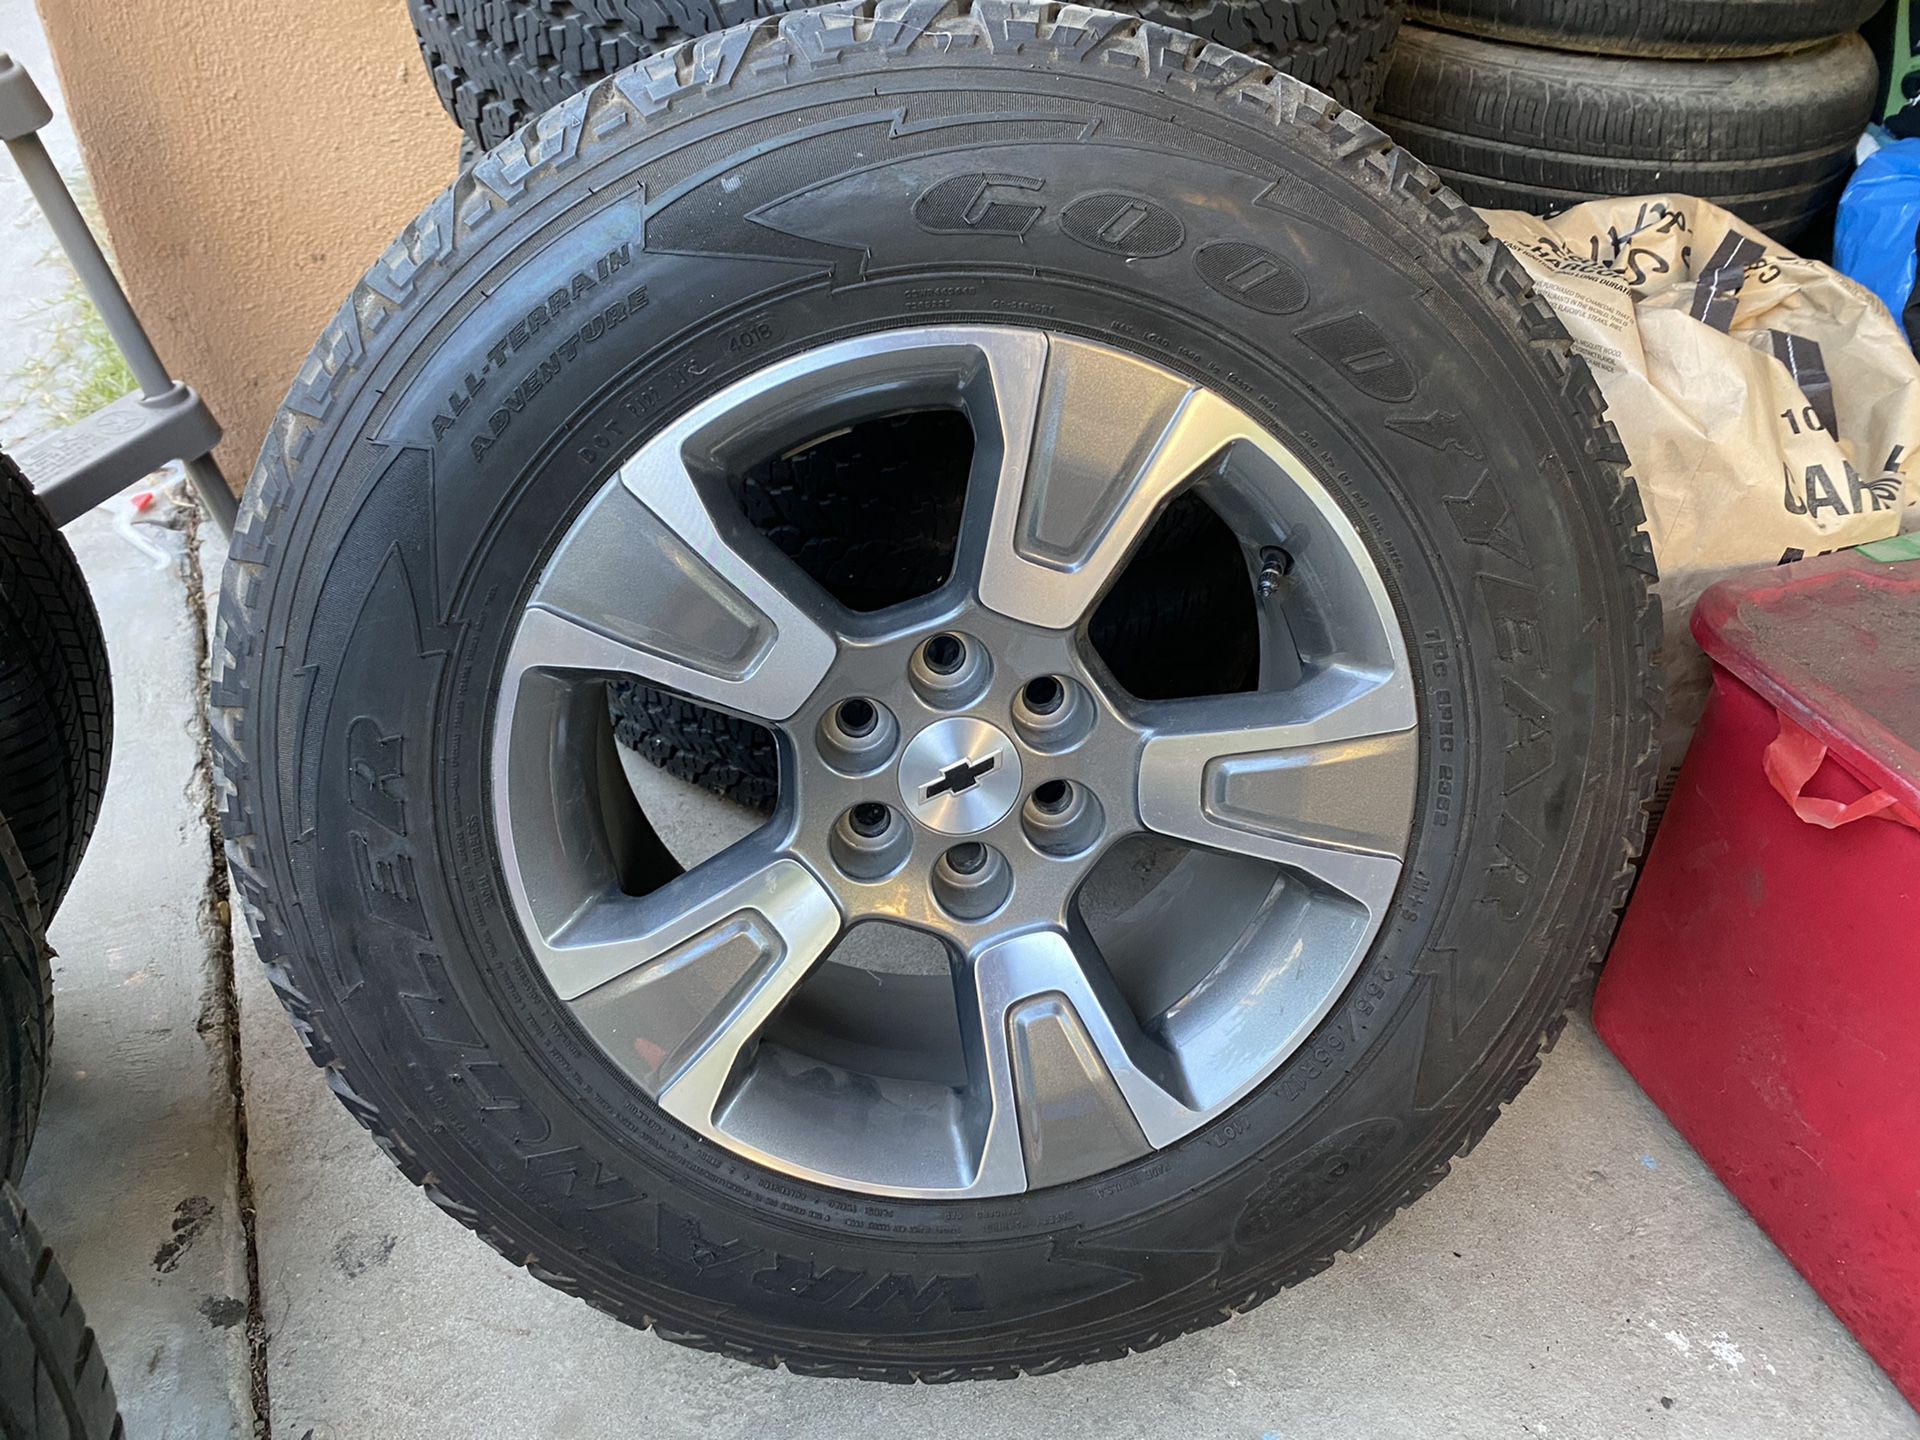 2019 Chevy Colorado Z71 wheels 17”